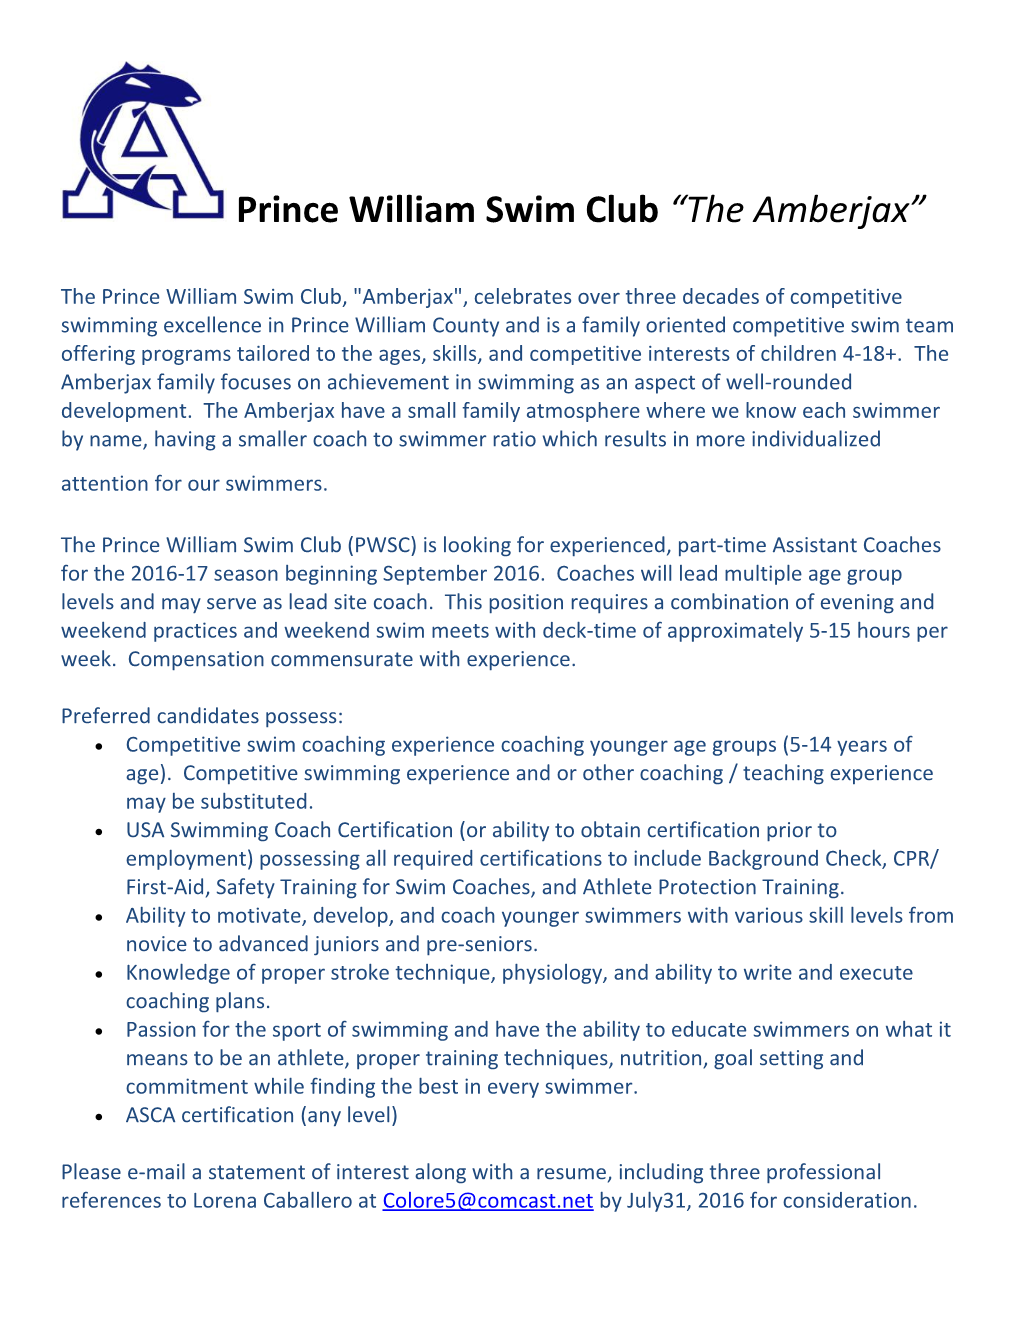 Prince William Swim Club the Amberjax